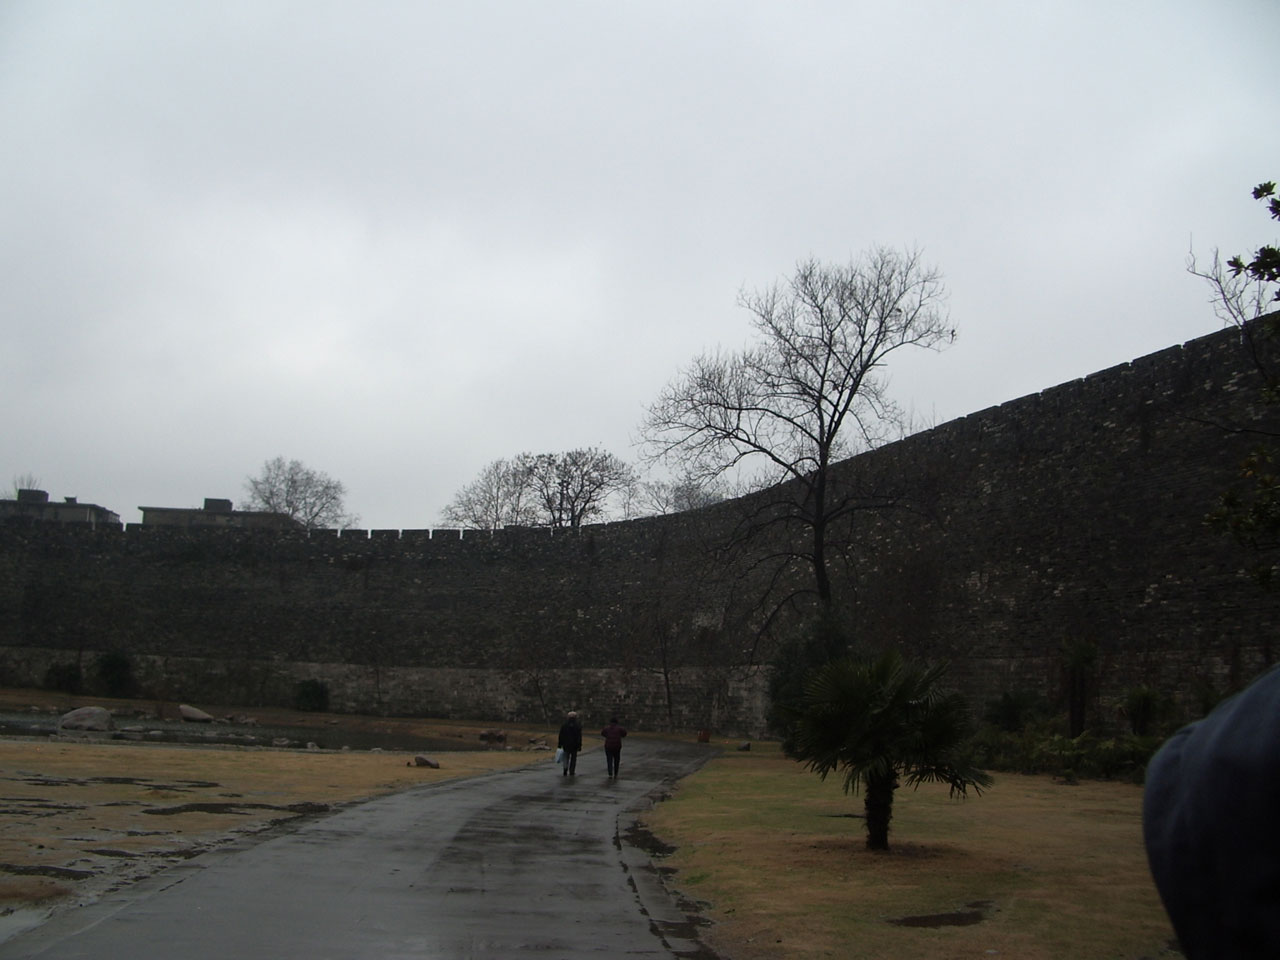 Palace Wall